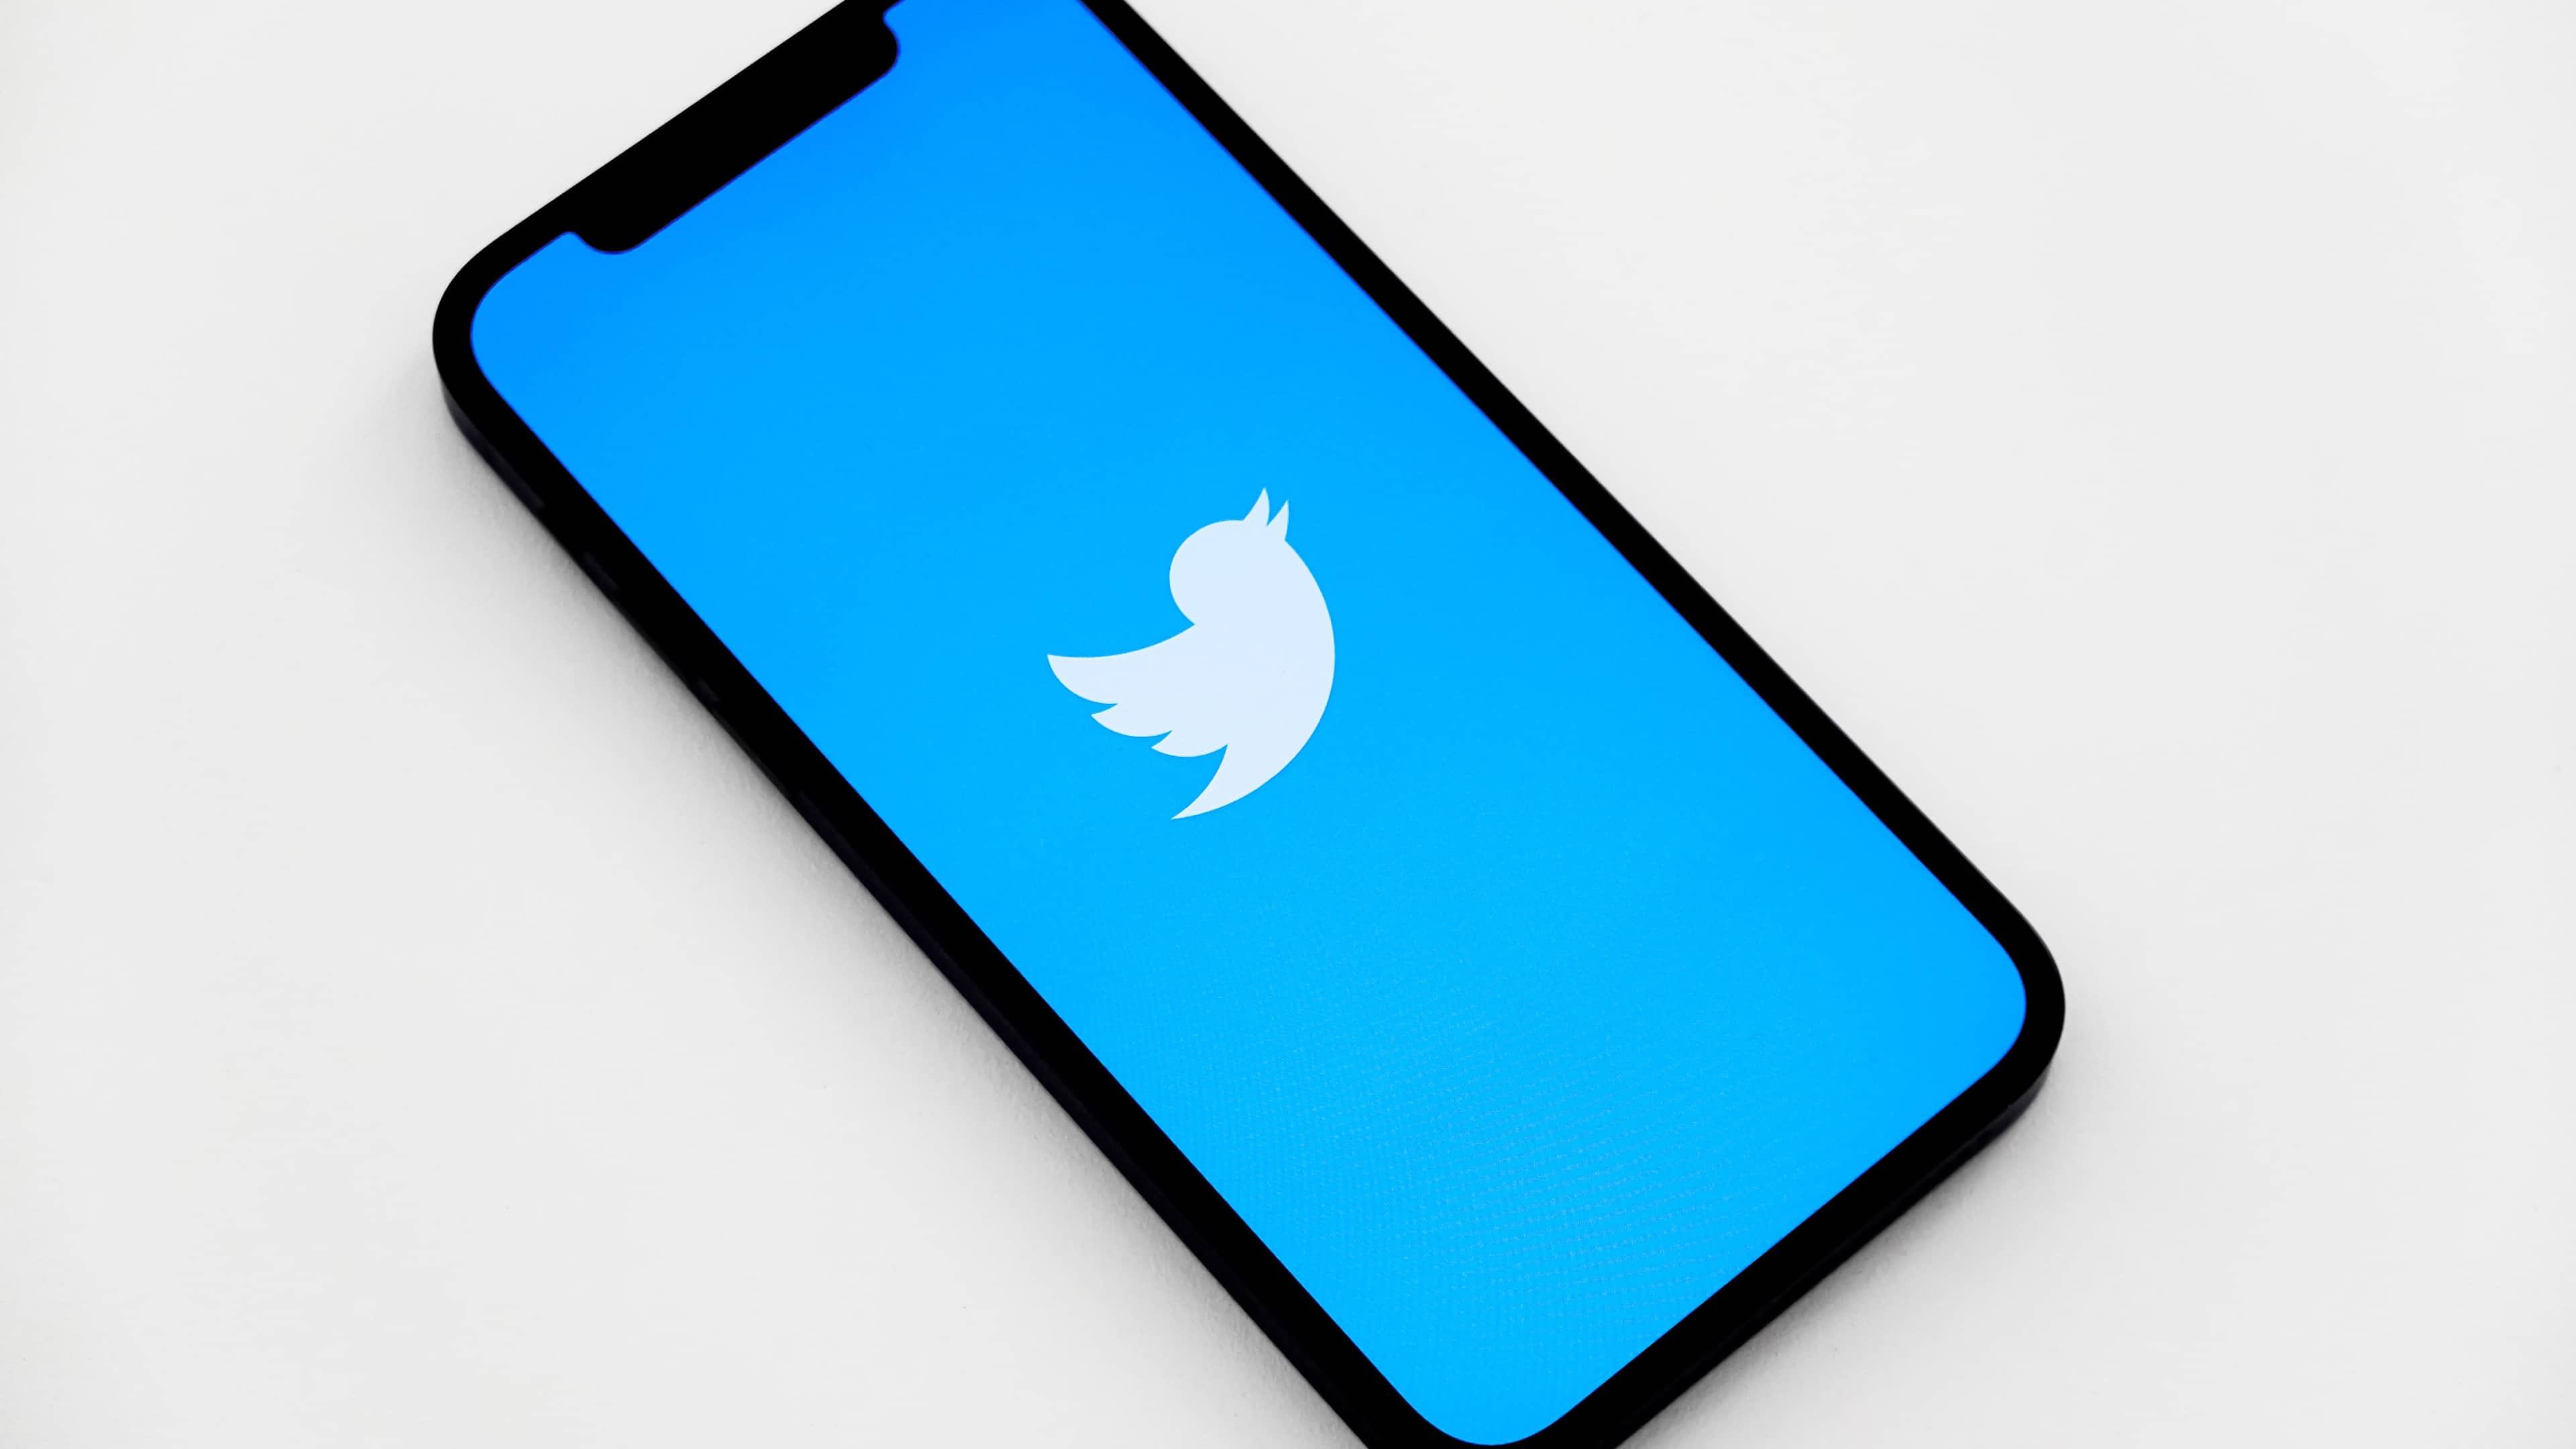 Vista isométrica de un iPhone que muestra el logotipo del pájaro blanco de Twitter en la pantalla, sobre un fondo azul claro vendido